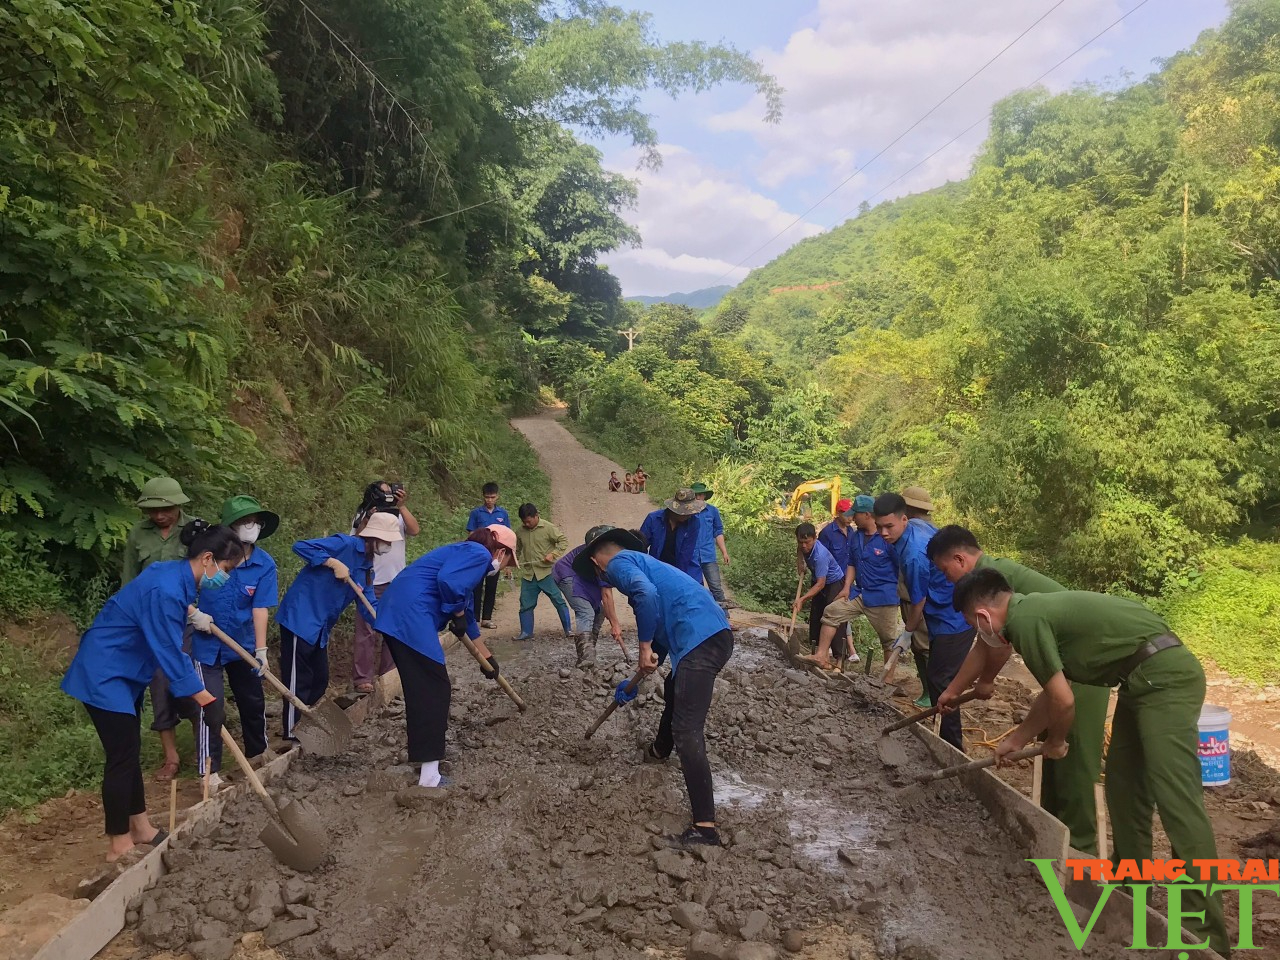 Sơn La: Hơn 100 đoàn viên, thanh niên ra quân tình nguyện xây dựng nông thôn mới ở Bắc Yên - Ảnh 2.